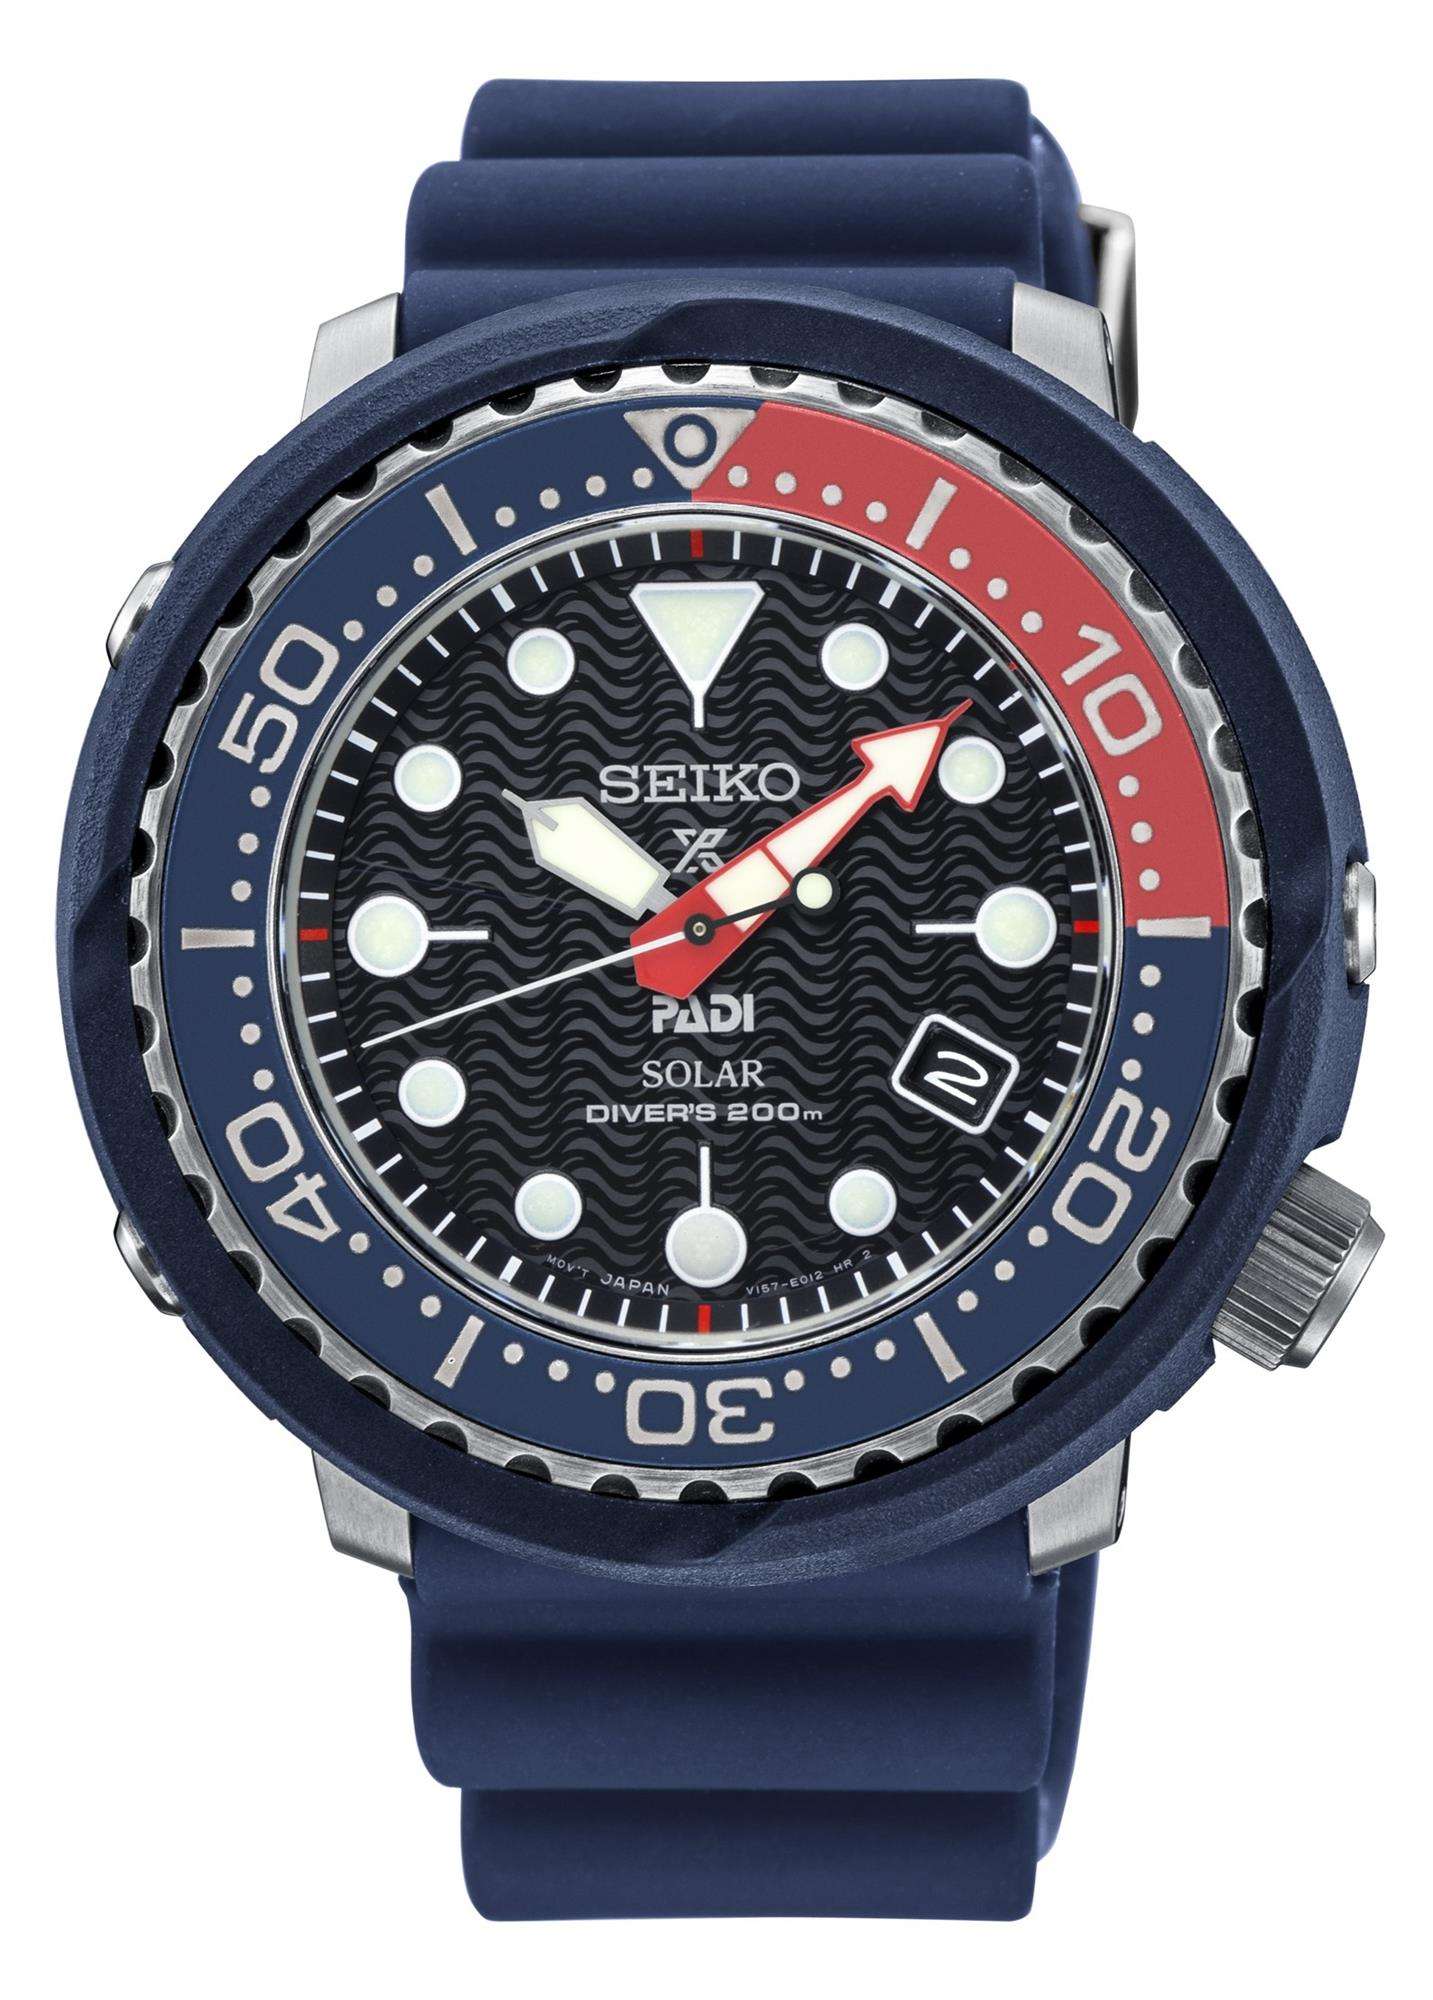 Seiko Prospex Solar Tuna PADI Special Edition Diver's Watch SNE499P1 RRP £ 369 - WatchNation